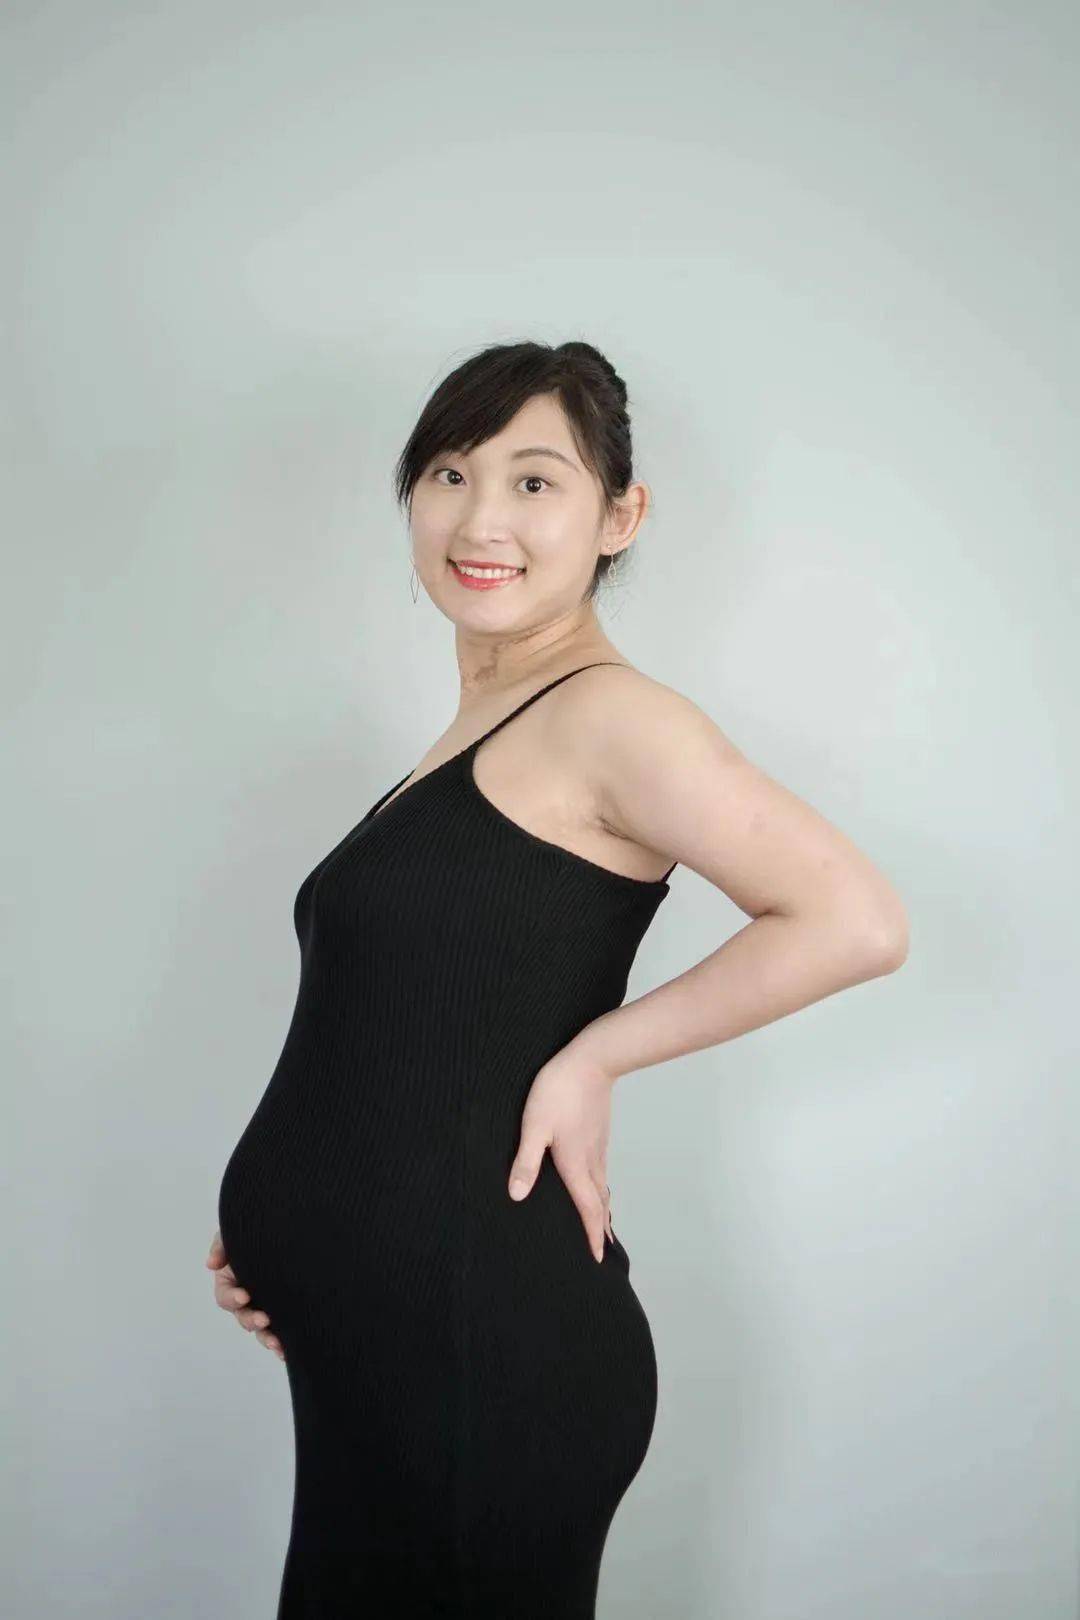 孕妈上线——大花儿的diy孕期纪念照